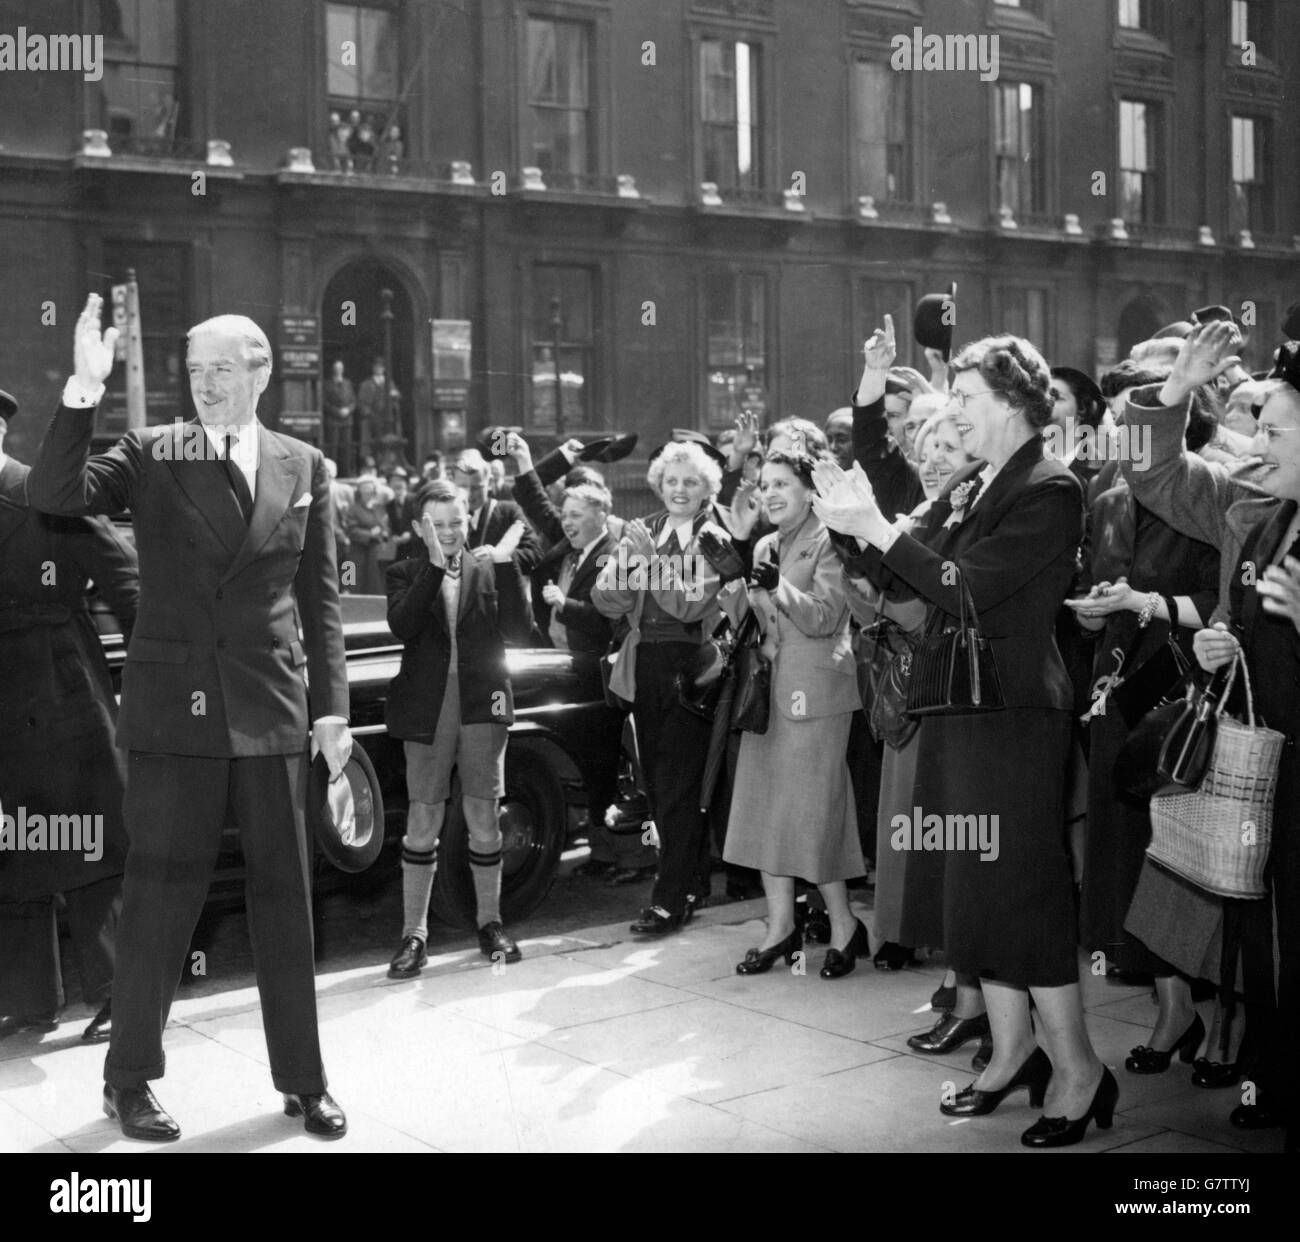 Sir Anthony Eden, Premierminister und Führer der Konservativen Partei, winkt der applaudierenden Menge zu, als er am Hauptquartier der Tory Party im Abbey House, Westminster, London, ankommt, nachdem seine Partei bei den Parlamentswahlen eine Mehrheit erhalten hatte. Stockfoto